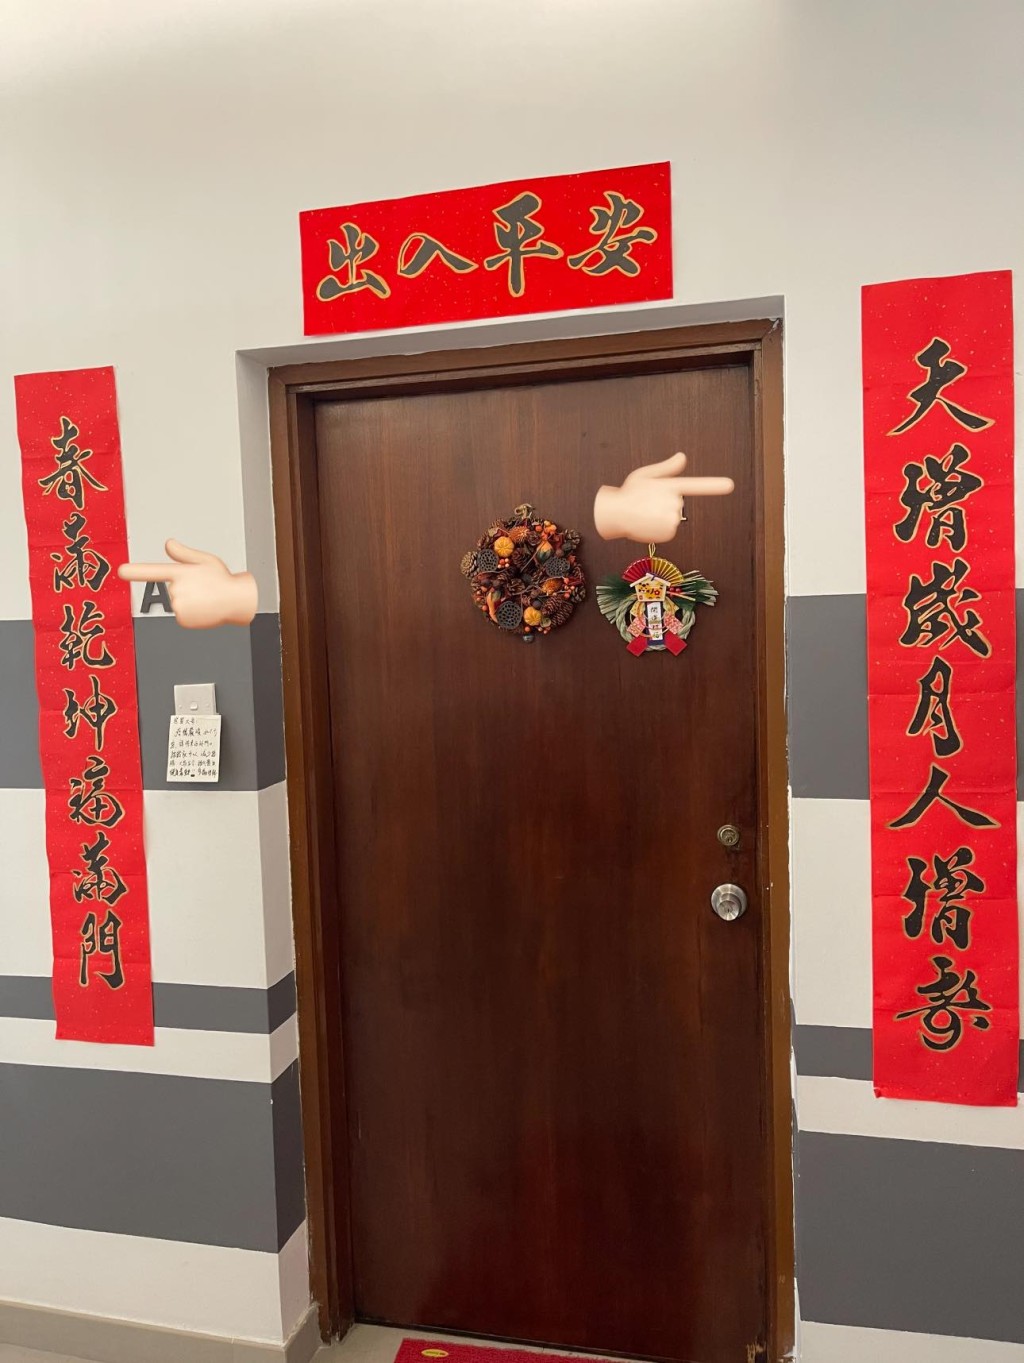 方太母女每年都請書法老師陳先生寫揮春和家大門的對聯。